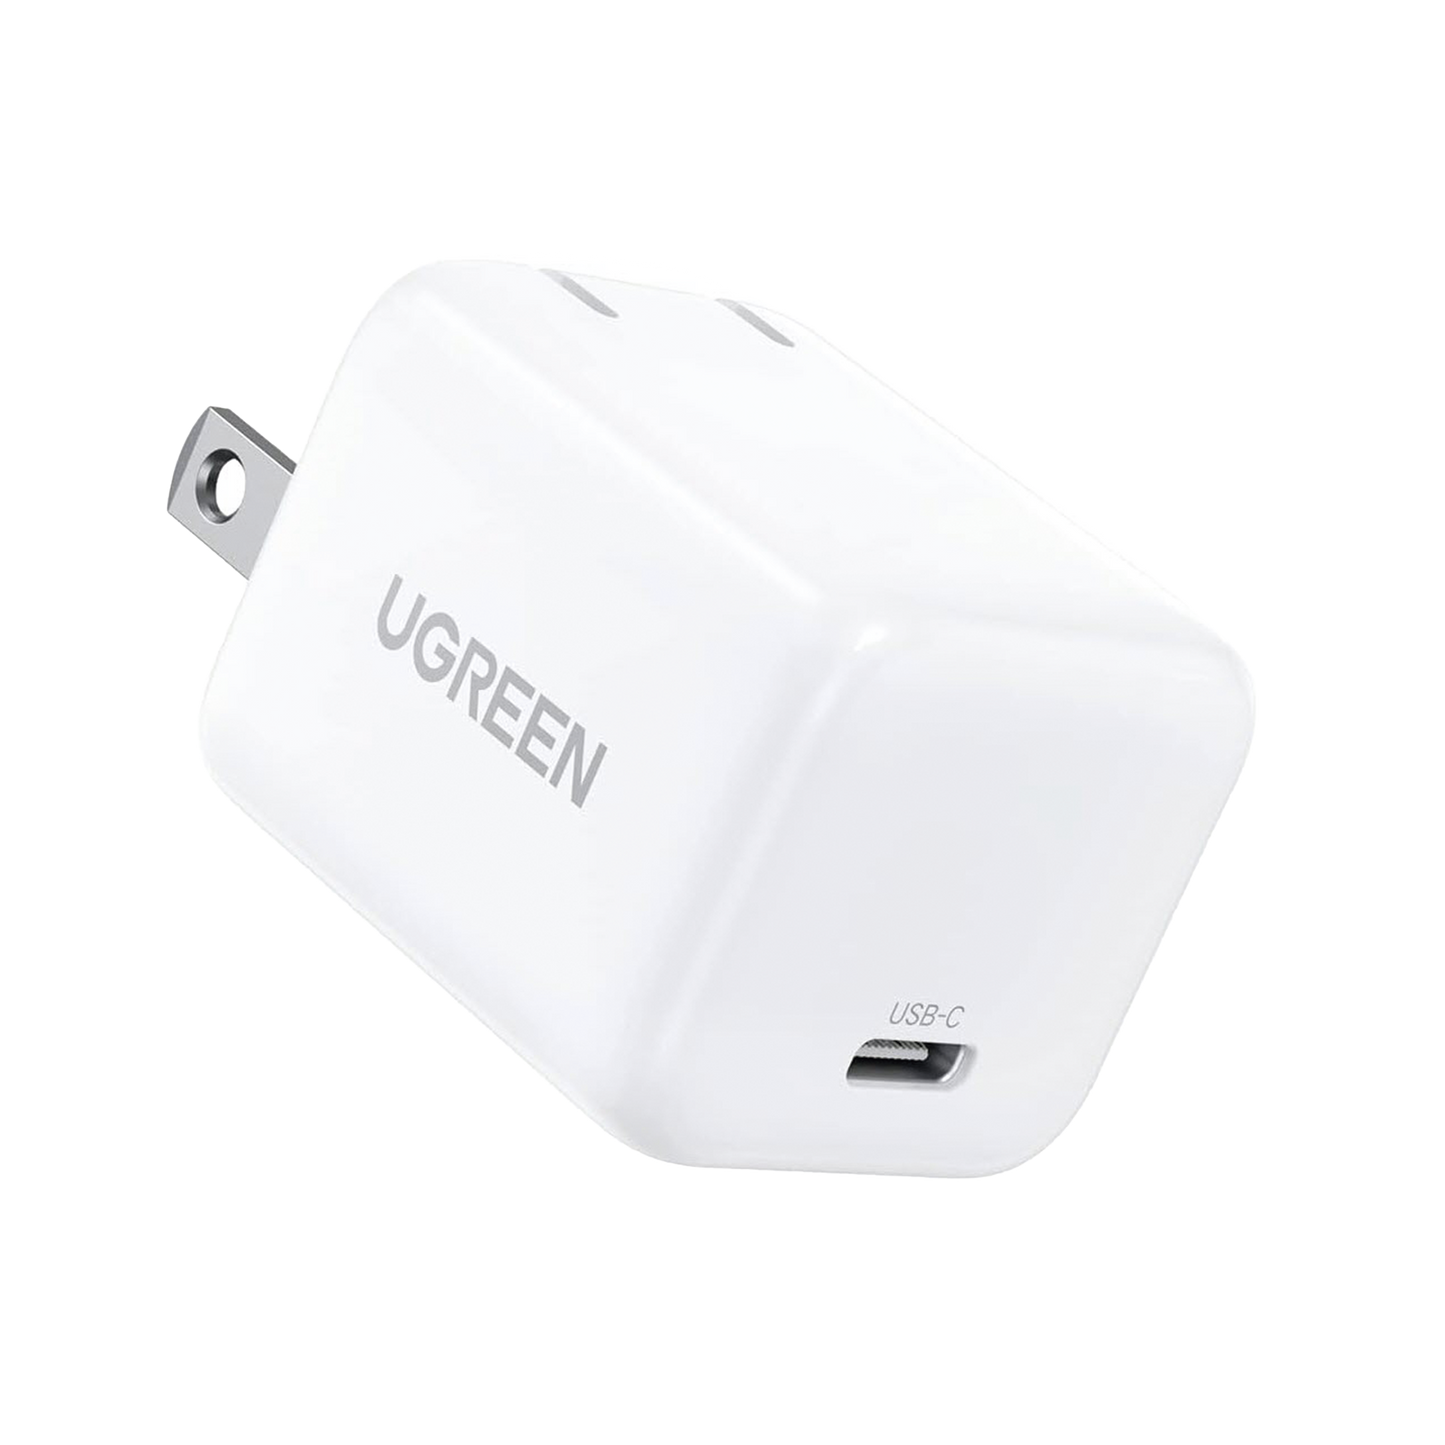 Cargador Mini de 20W serie Nexode / 1 USB-C de Carga Rápida / Tecnología GaN II / Power Delivery 3.0 / Quick Charge 4.0 / Carga Inteligente /Múltiple Protección  / Mayor Eficiencia Energética / Color Blanco